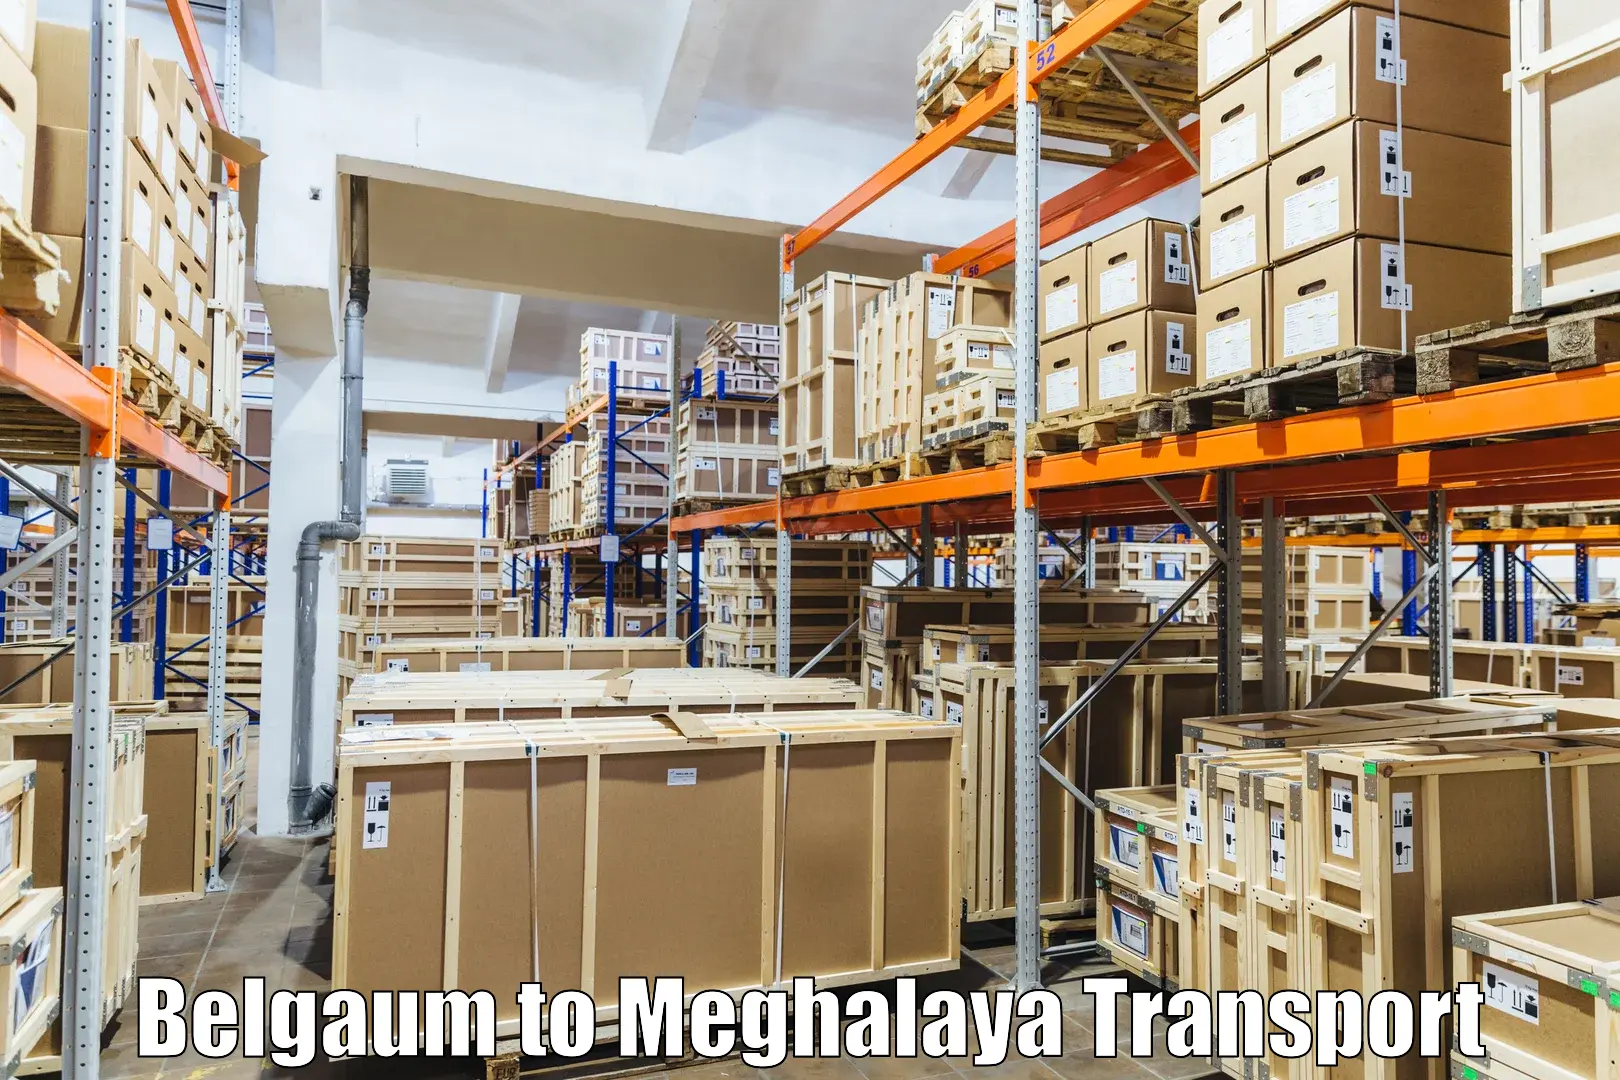 All India transport service Belgaum to Williamnagar